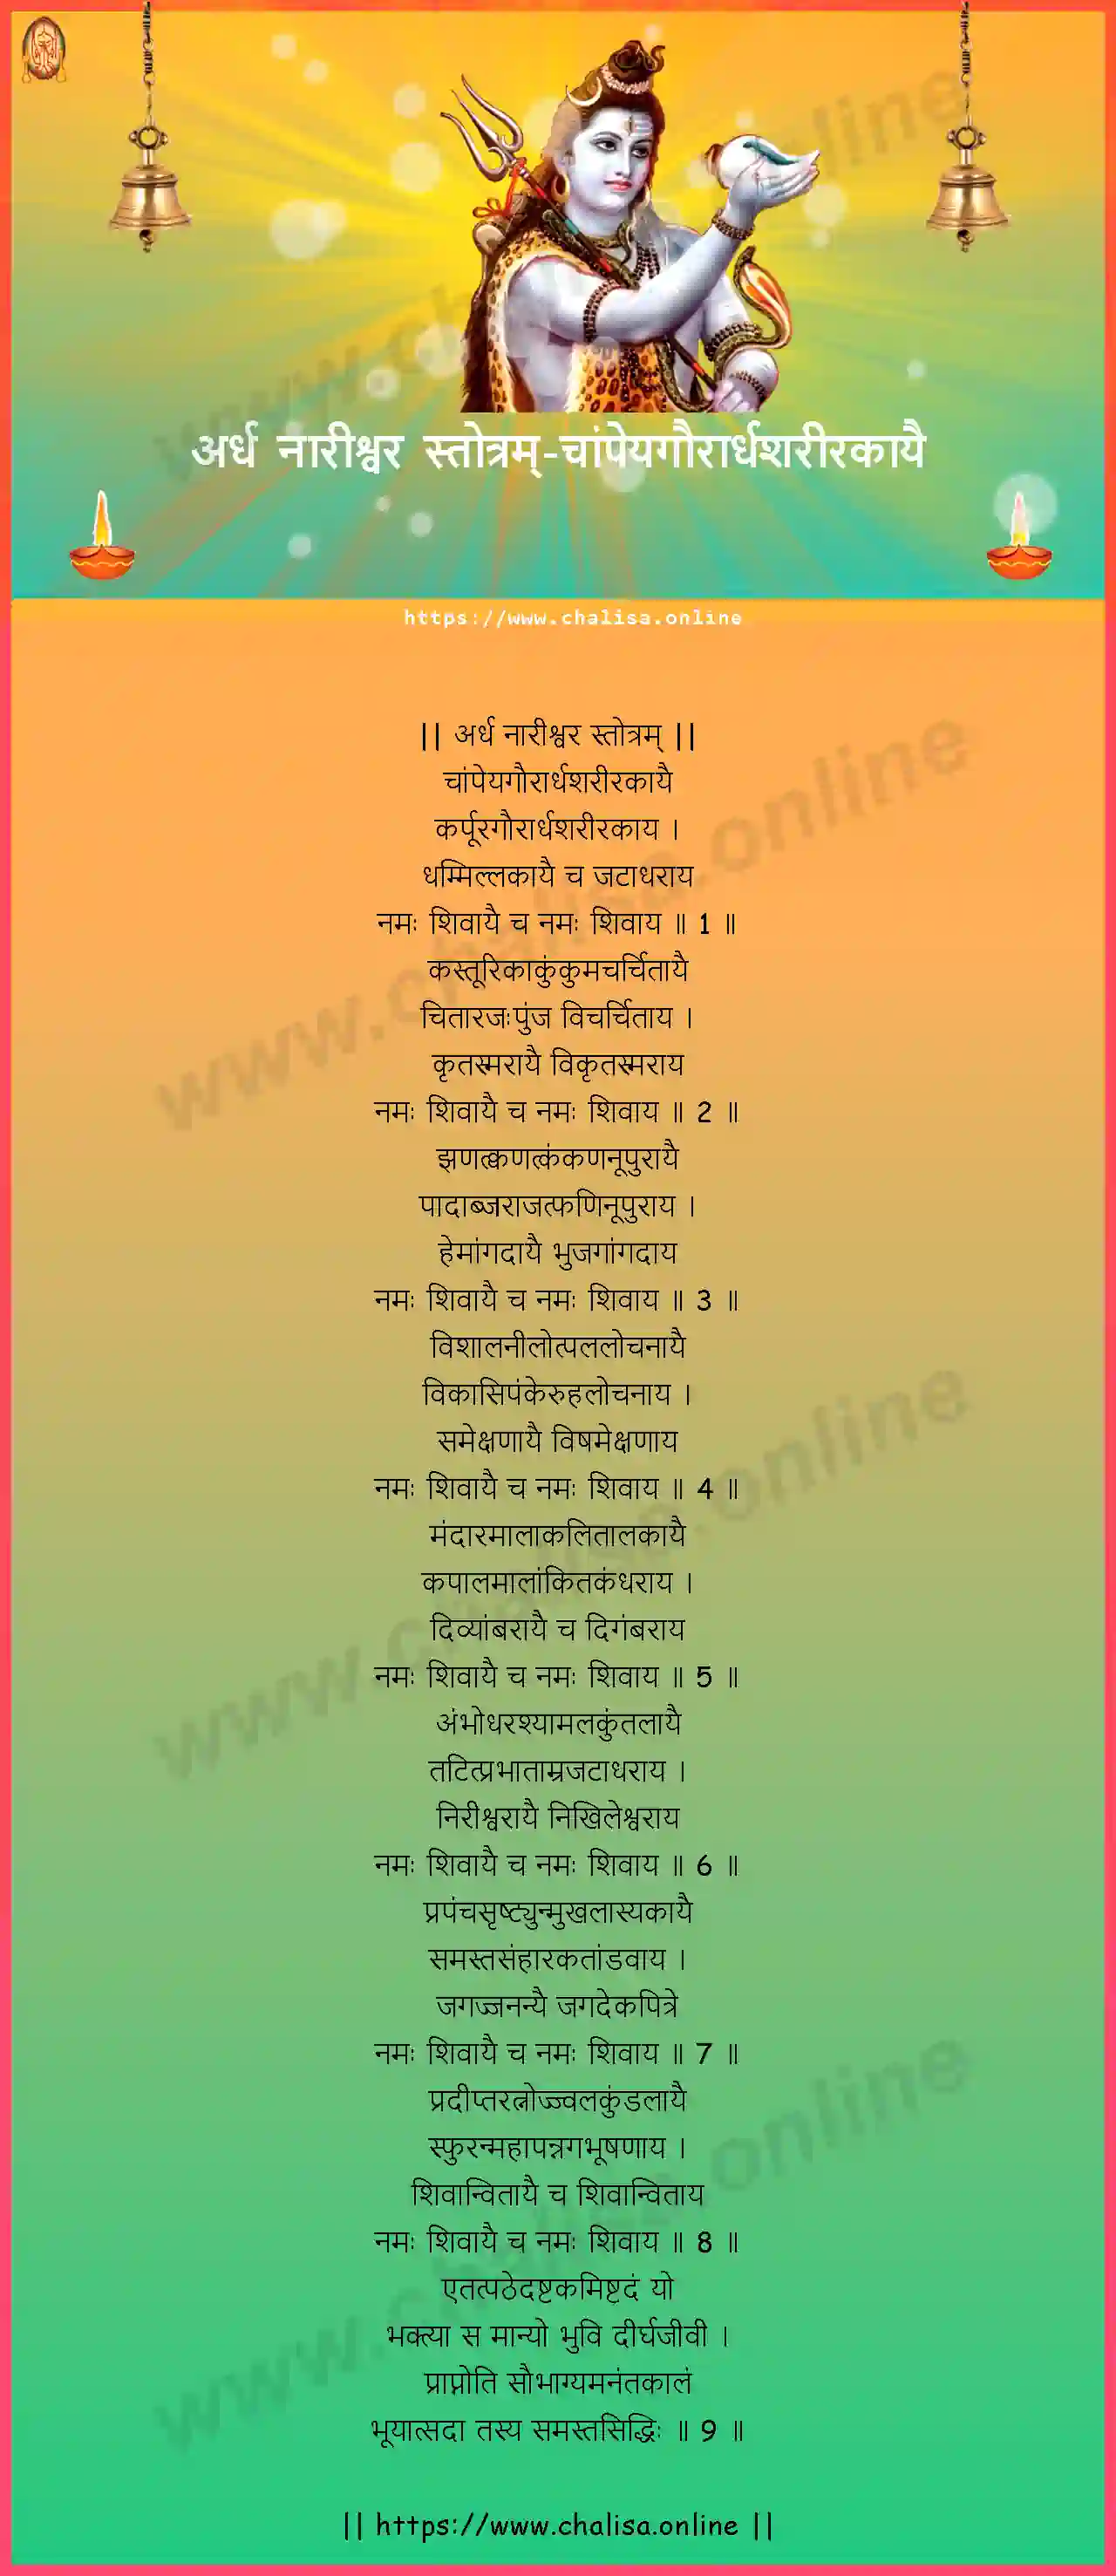 champeyagaurardhasarirakayai-ardha-nareeswara-stotram-nepali-nepali-lyrics-download